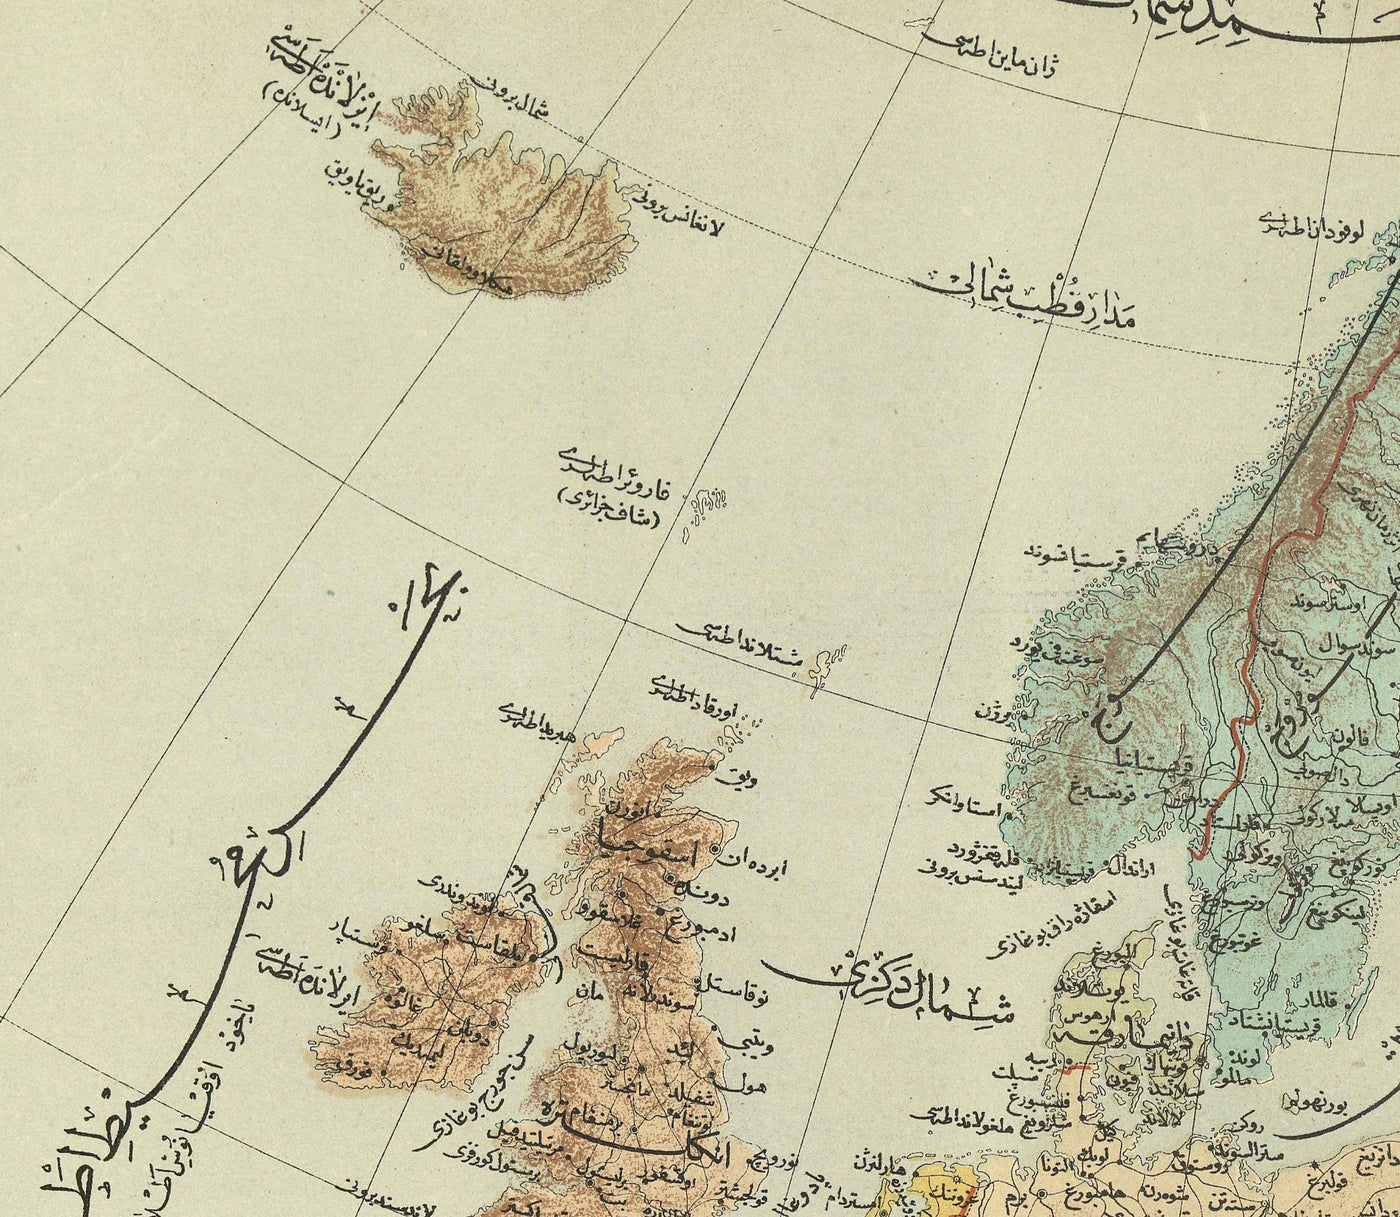 Antiguo mapa árabe de Europa por Hafız Ali Eşref, 1893 - Reino Unido, Francia, Alemania, España, Imperio Otomano, Turquía, Rusia.